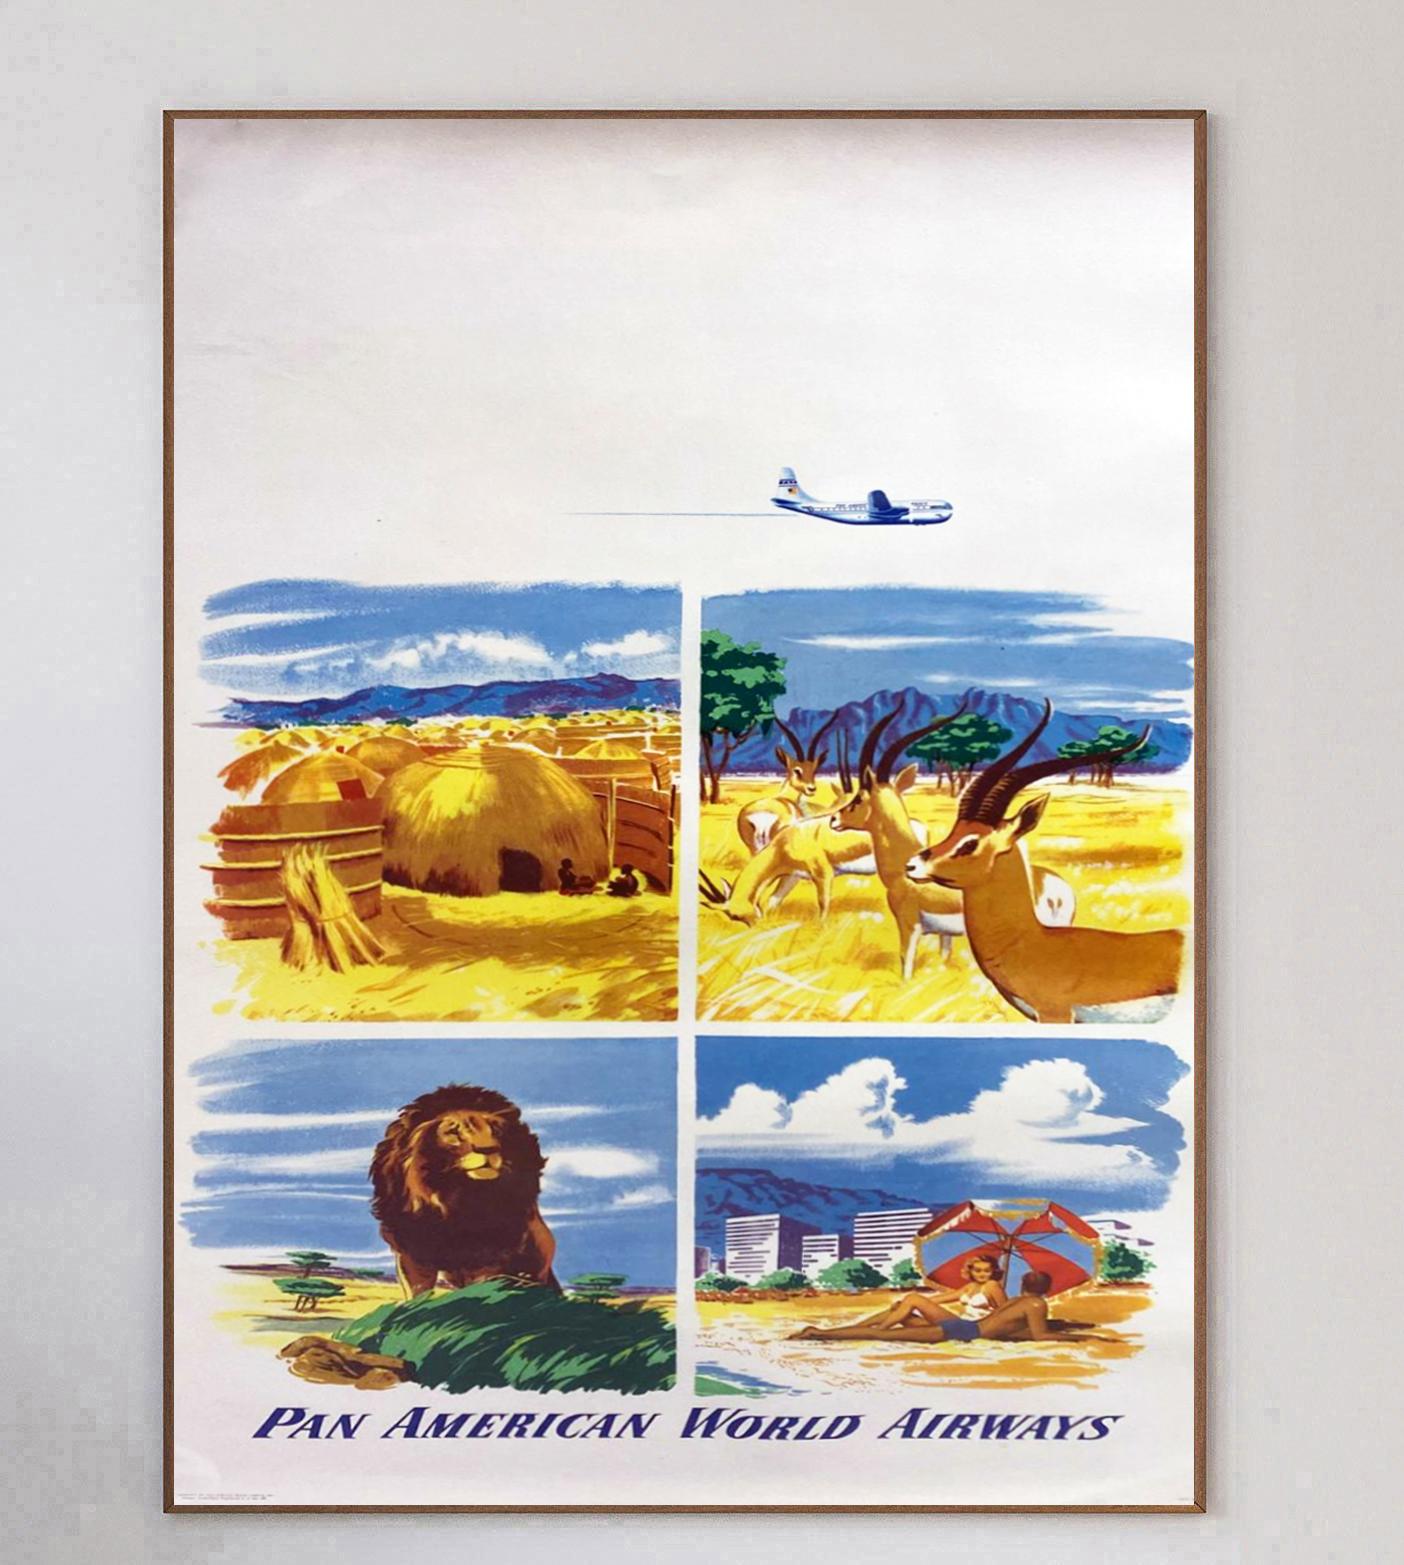 Wunderschönes und seltenes Plakat aus dem Jahr 1951 für Pan American World Airways, allgemein bekannt als Pan Am. Dieses Poster zeigt vier wunderschöne Szenen mit wilden Tieren in einem Naturschutzgebiet, einem örtlichen Dorf und einem Strandresort